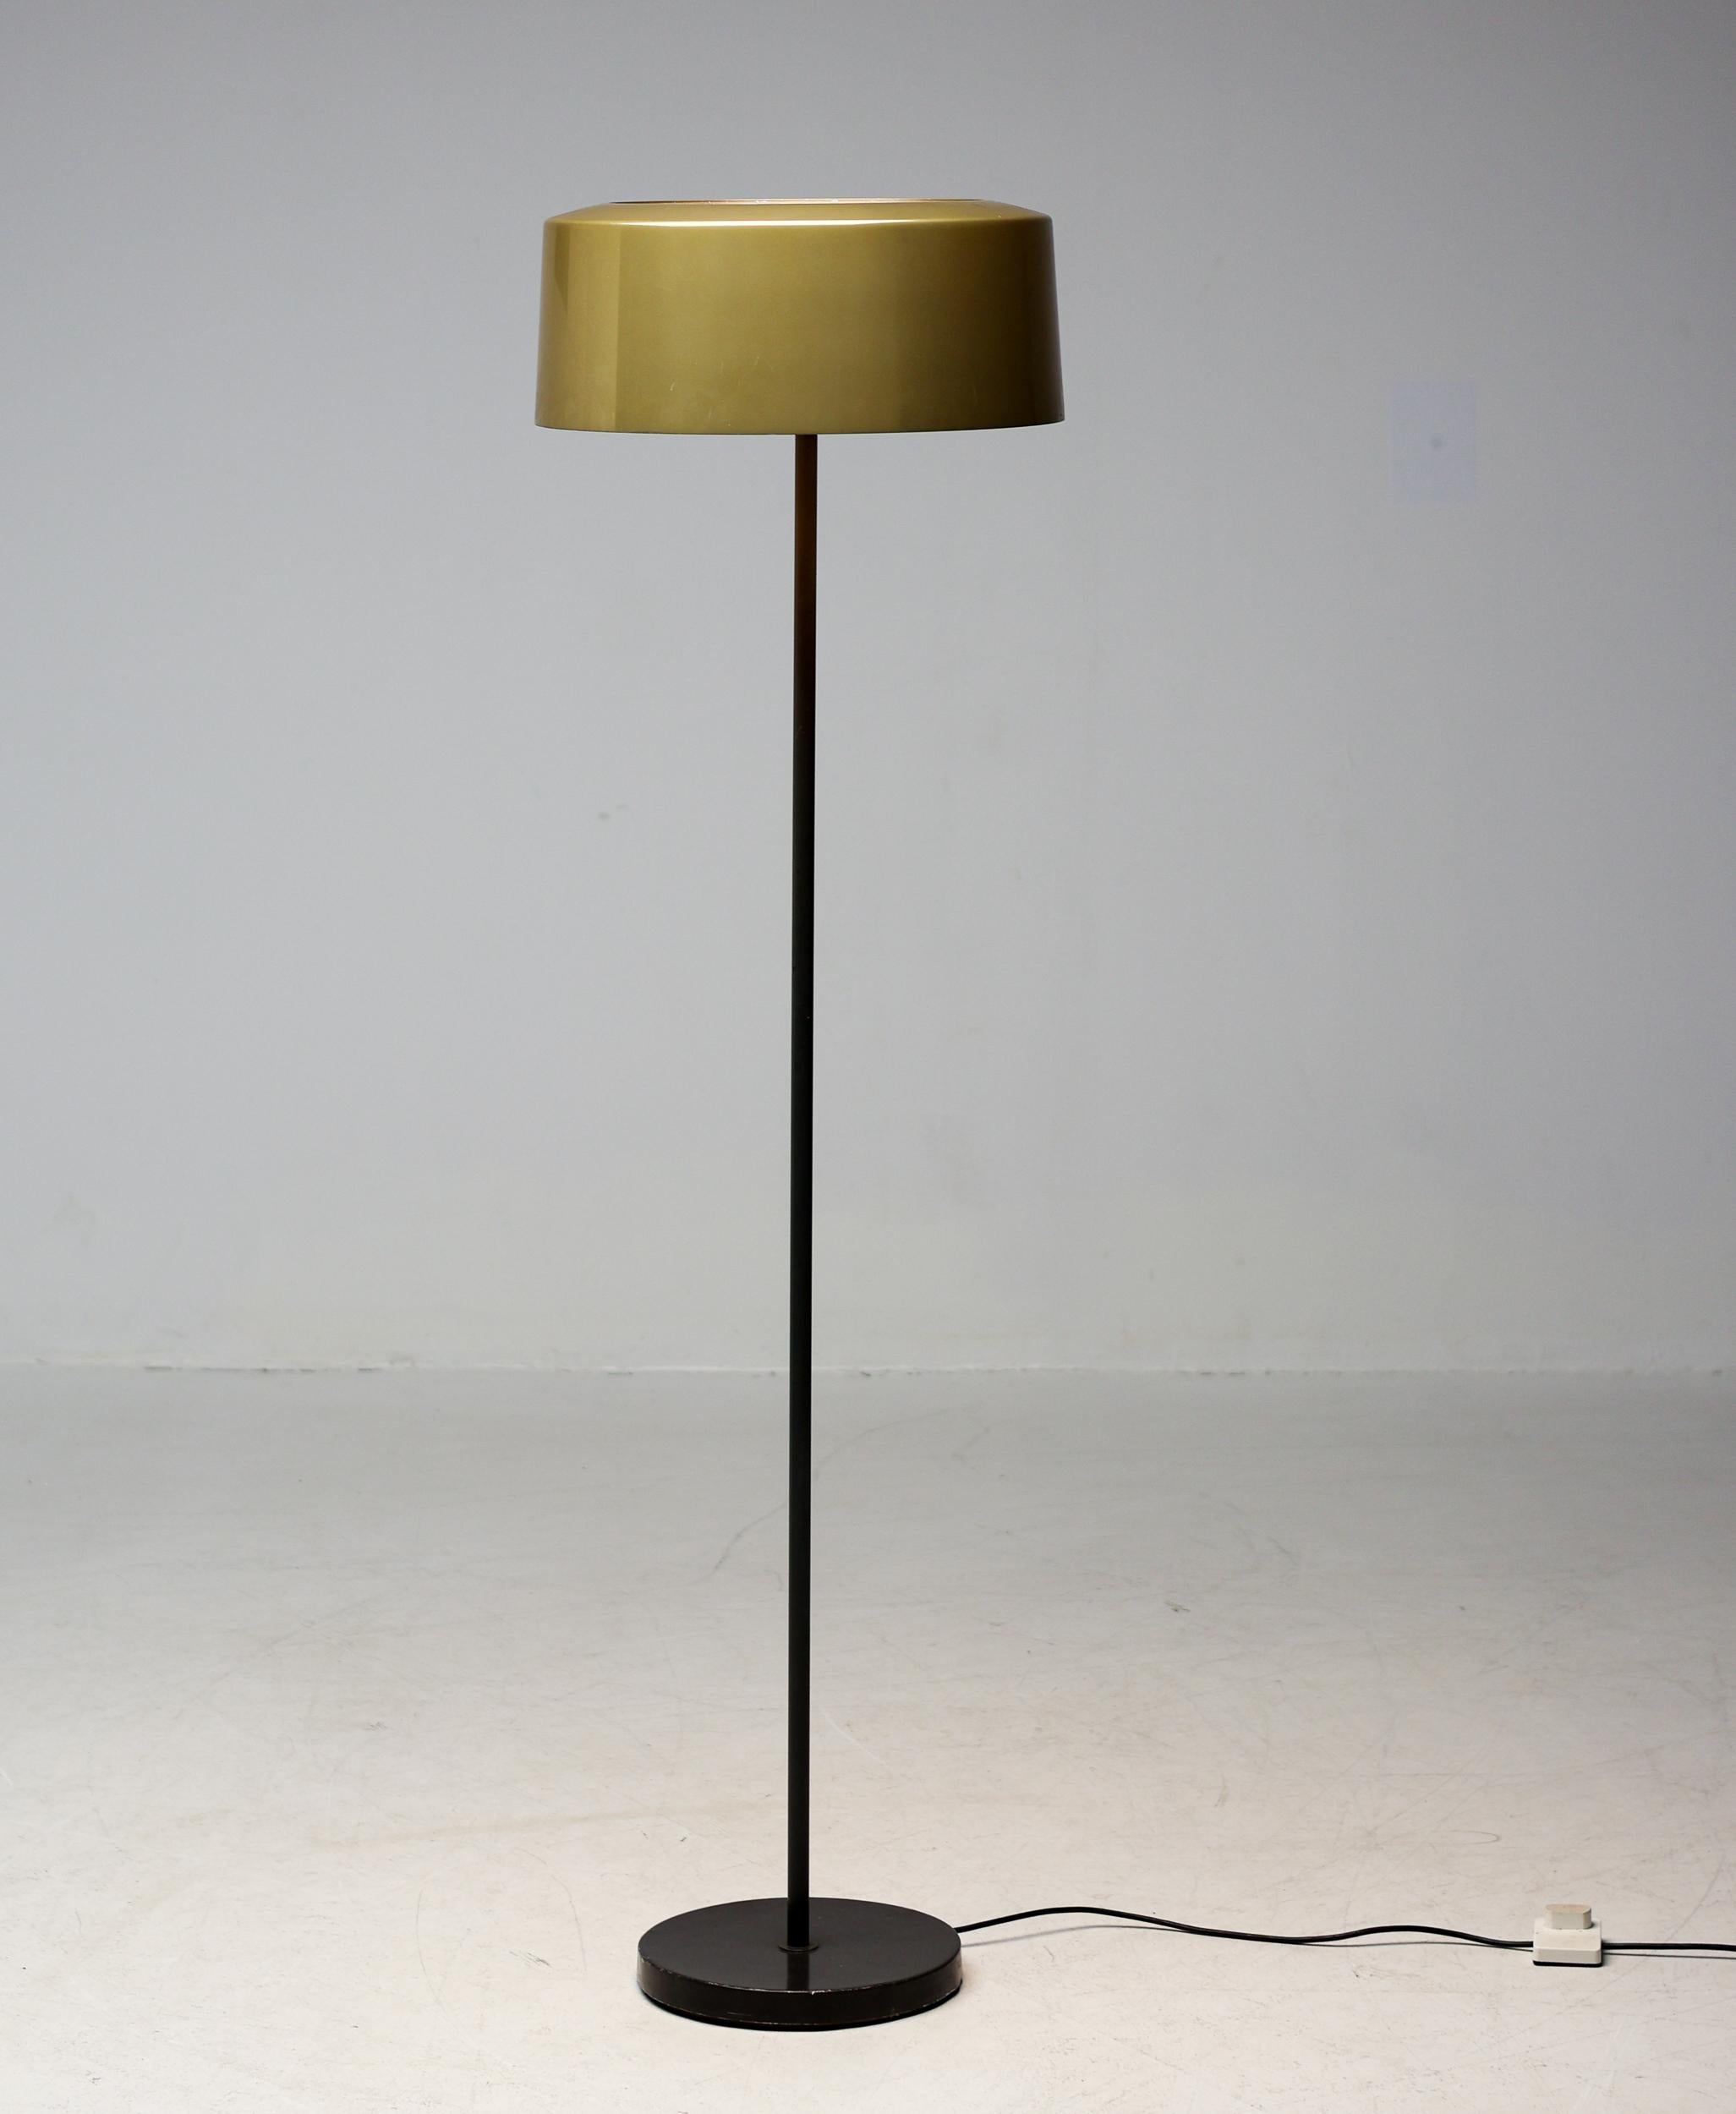 Magnifique lampadaire des années 1950, avec un abat-jour en aluminium émaillé de bronze. 
Conçu par Lisa-Johansson Pape et fabriqué par Orno. 
La partie supérieure de l'abat-jour est recouverte de verre, la partie inférieure comporte des lamelles